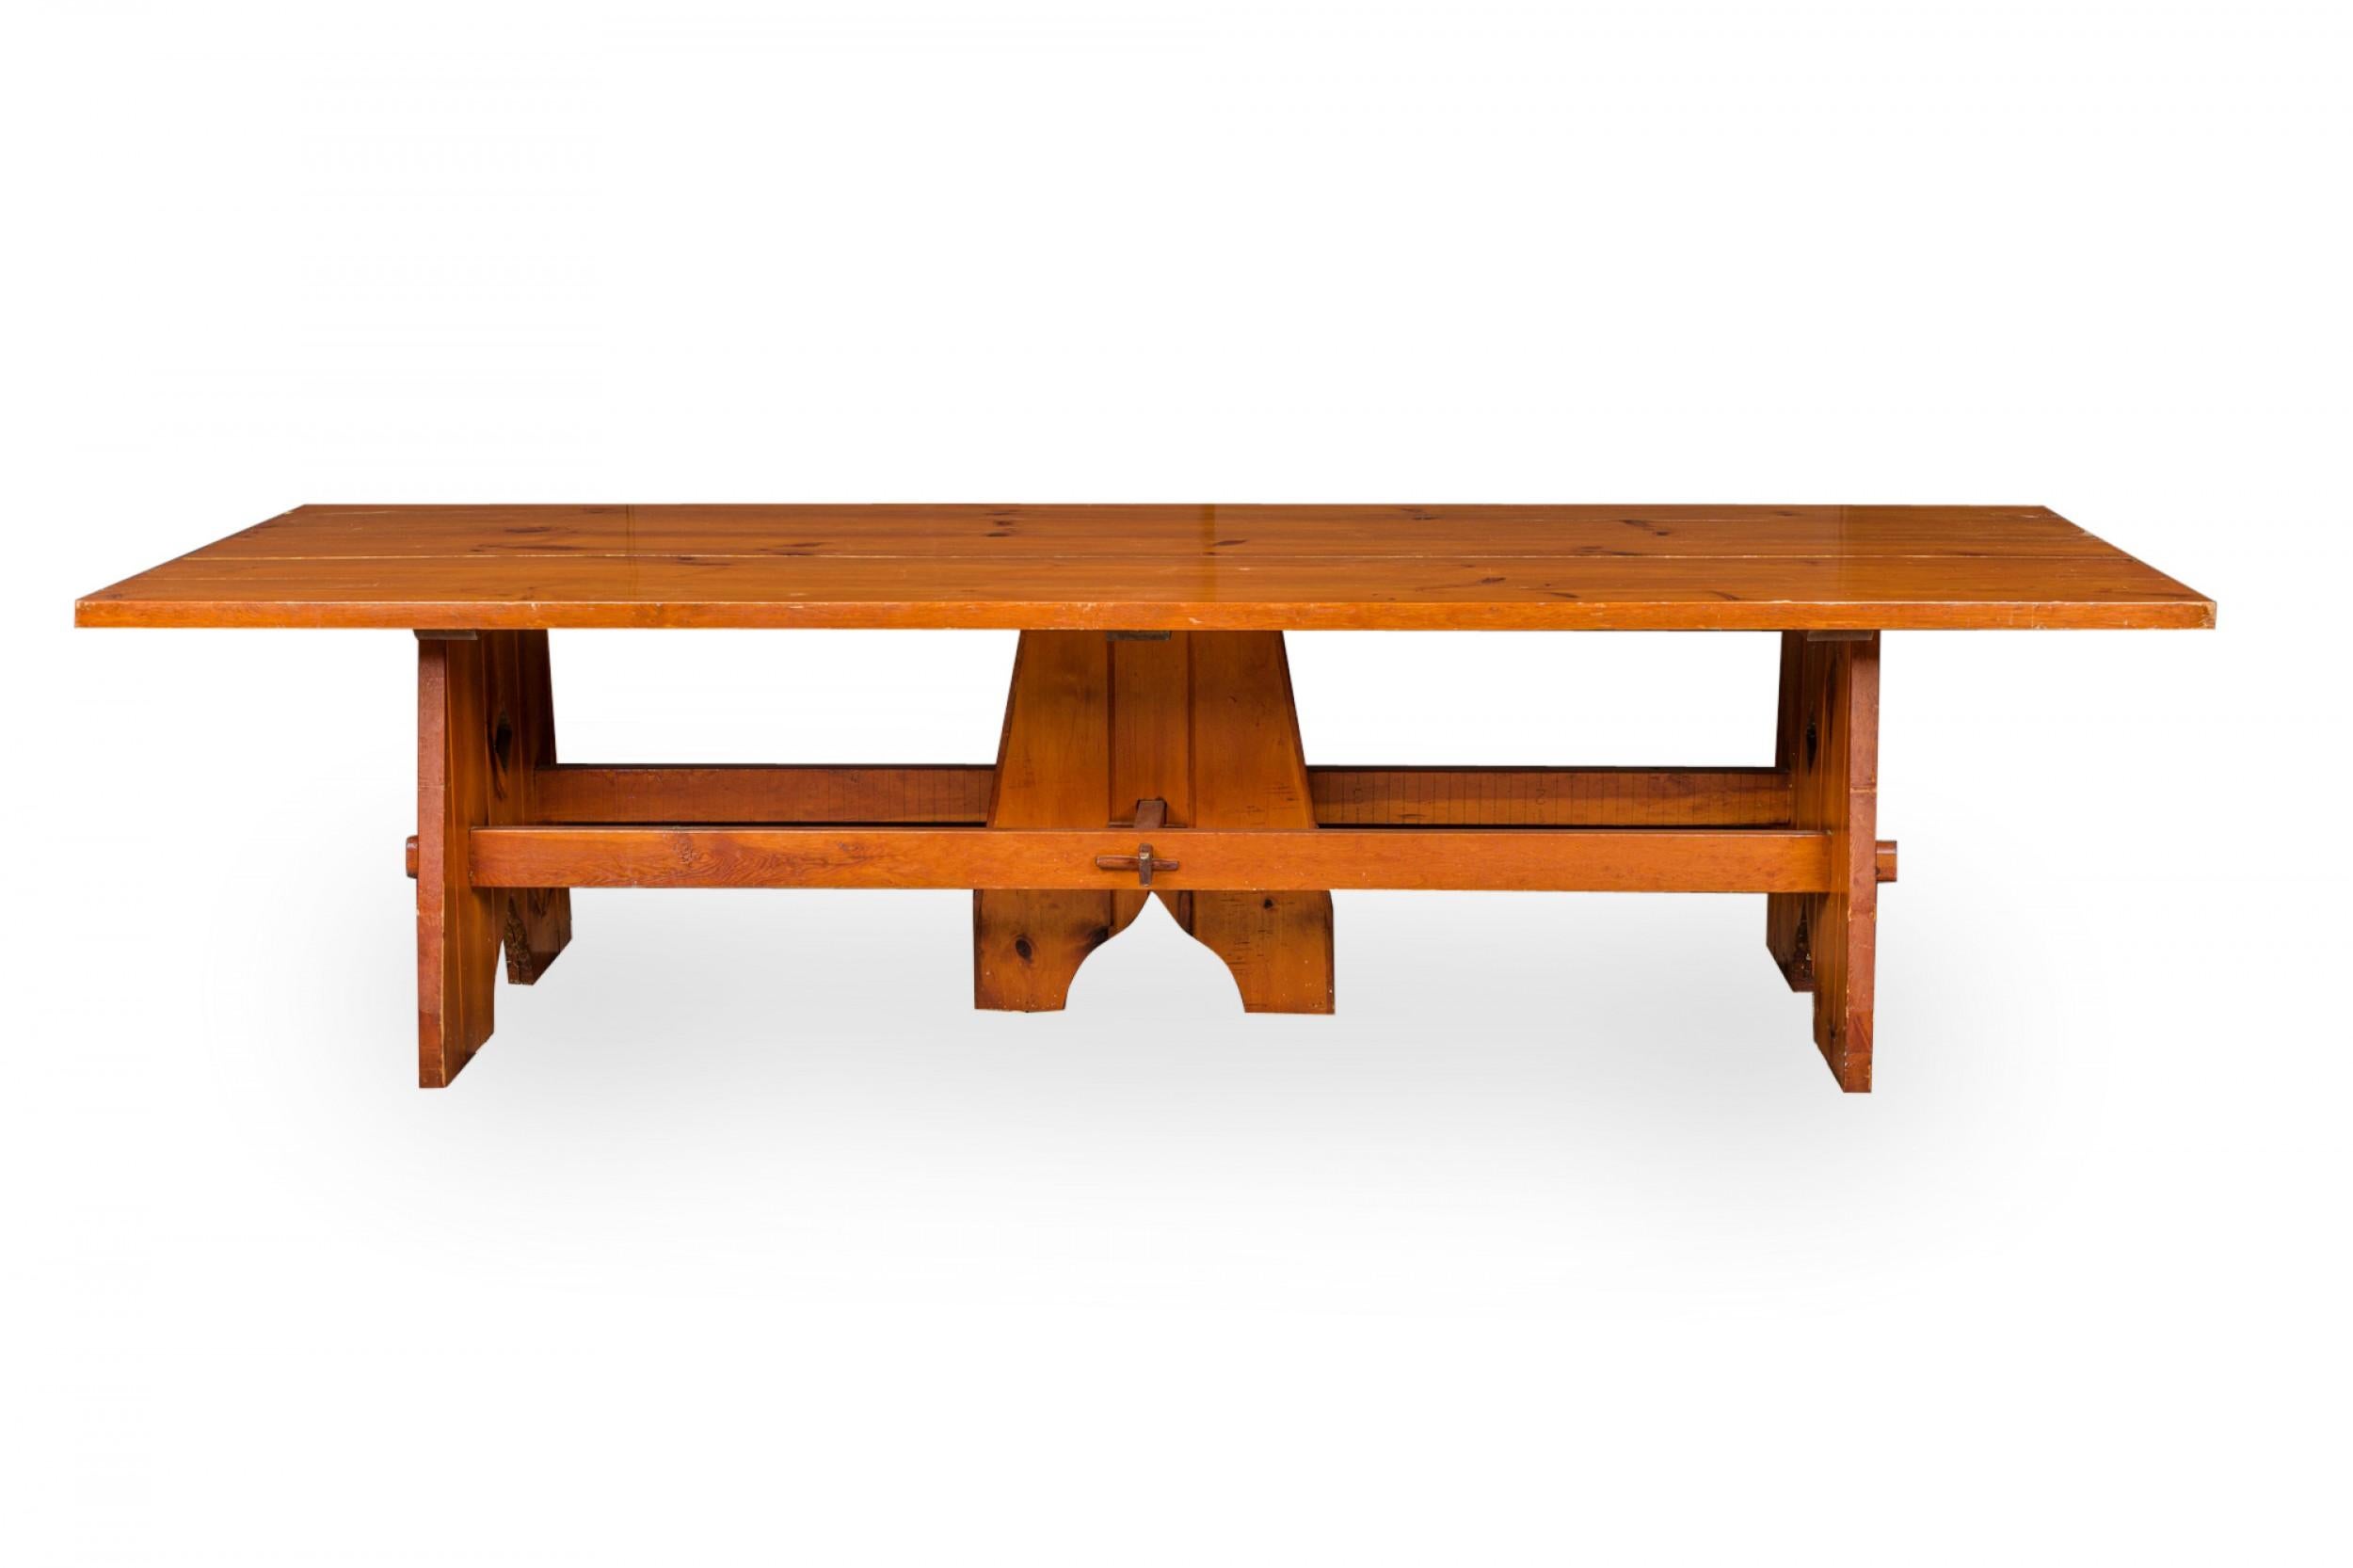 Grande table à manger rustique en bois de pin teinté et scellé de style Adirondack (milieu du 20e siècle) avec un plateau rectangulaire en bois de planche reposant sur une base composée de trois larges pieds avec une base de civière et un assemblage